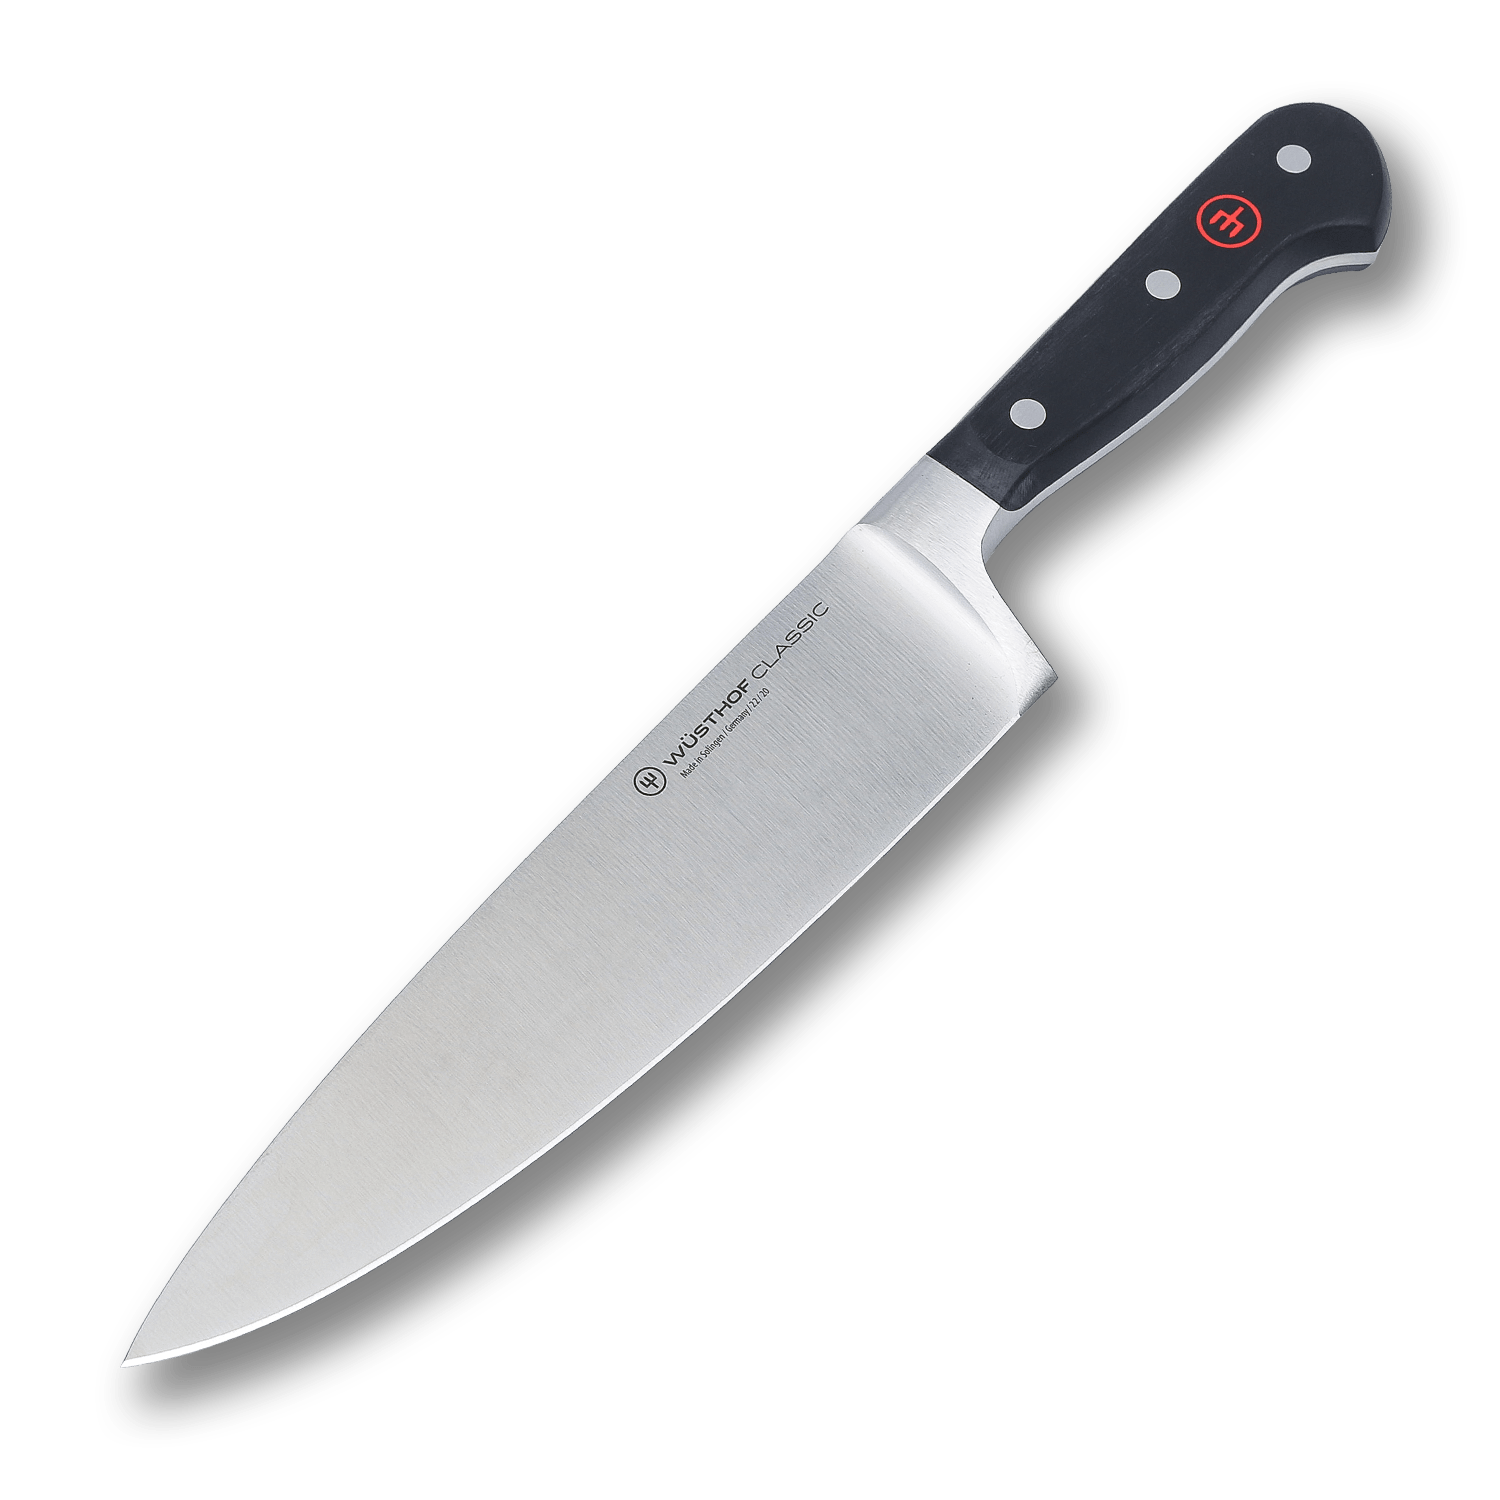 Поварской кухонный шеф-нож Wuesthof 20 см, кованая молибден-ванадиевая нержавеющая сталь X50CrMoV15, 1040100120